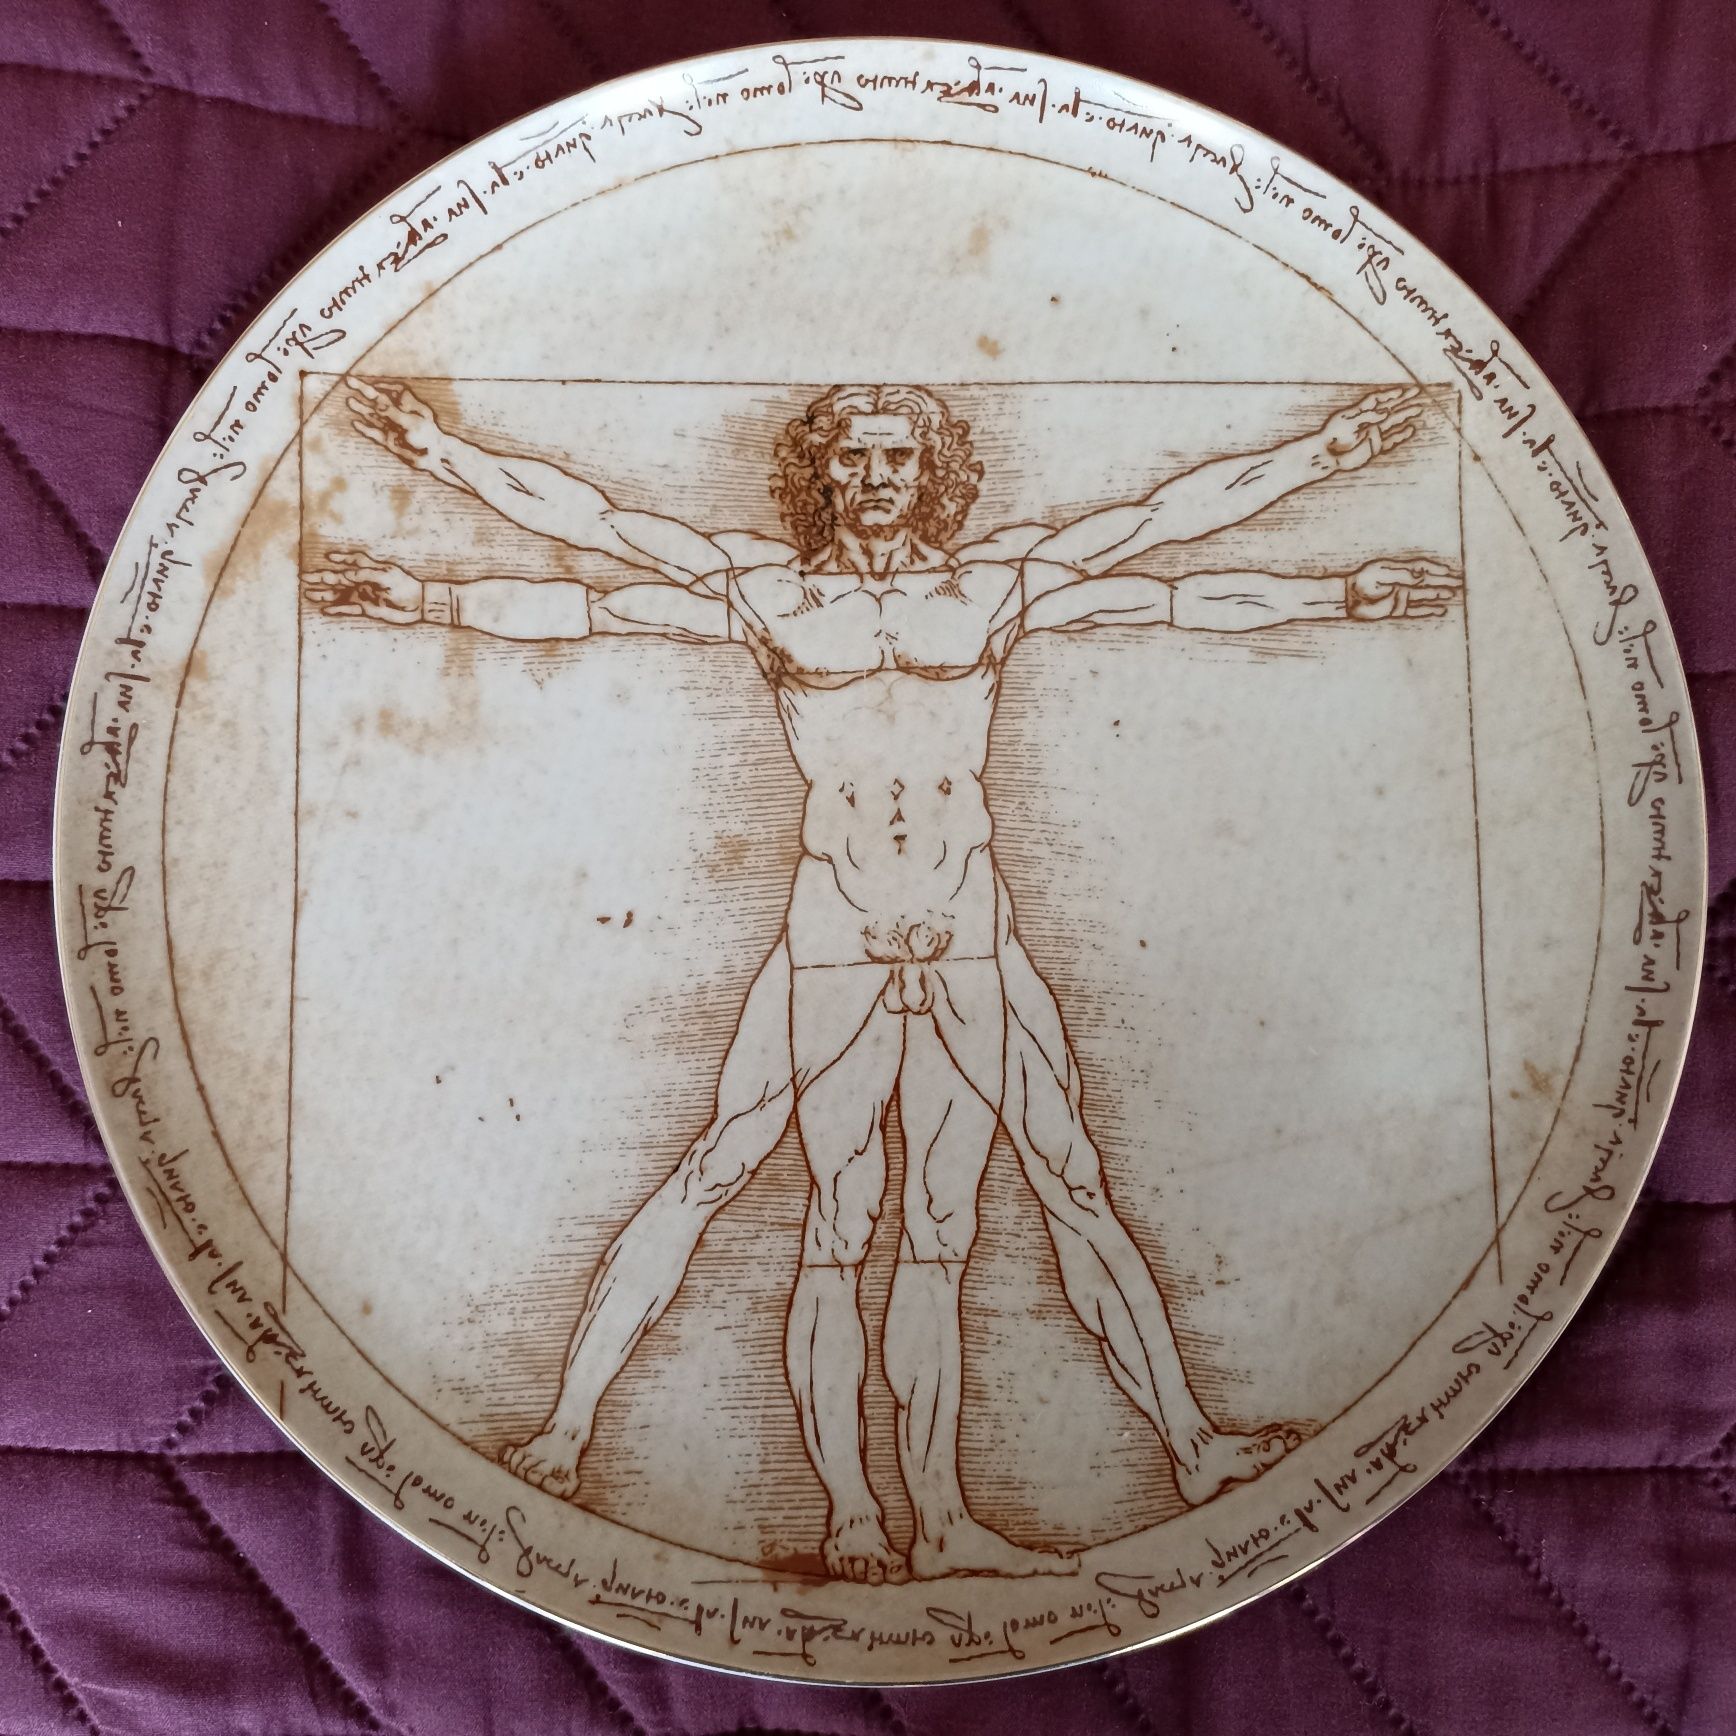 Prato grande SPAL edição limitada Homem Vitruviano Leonardo da Vinci